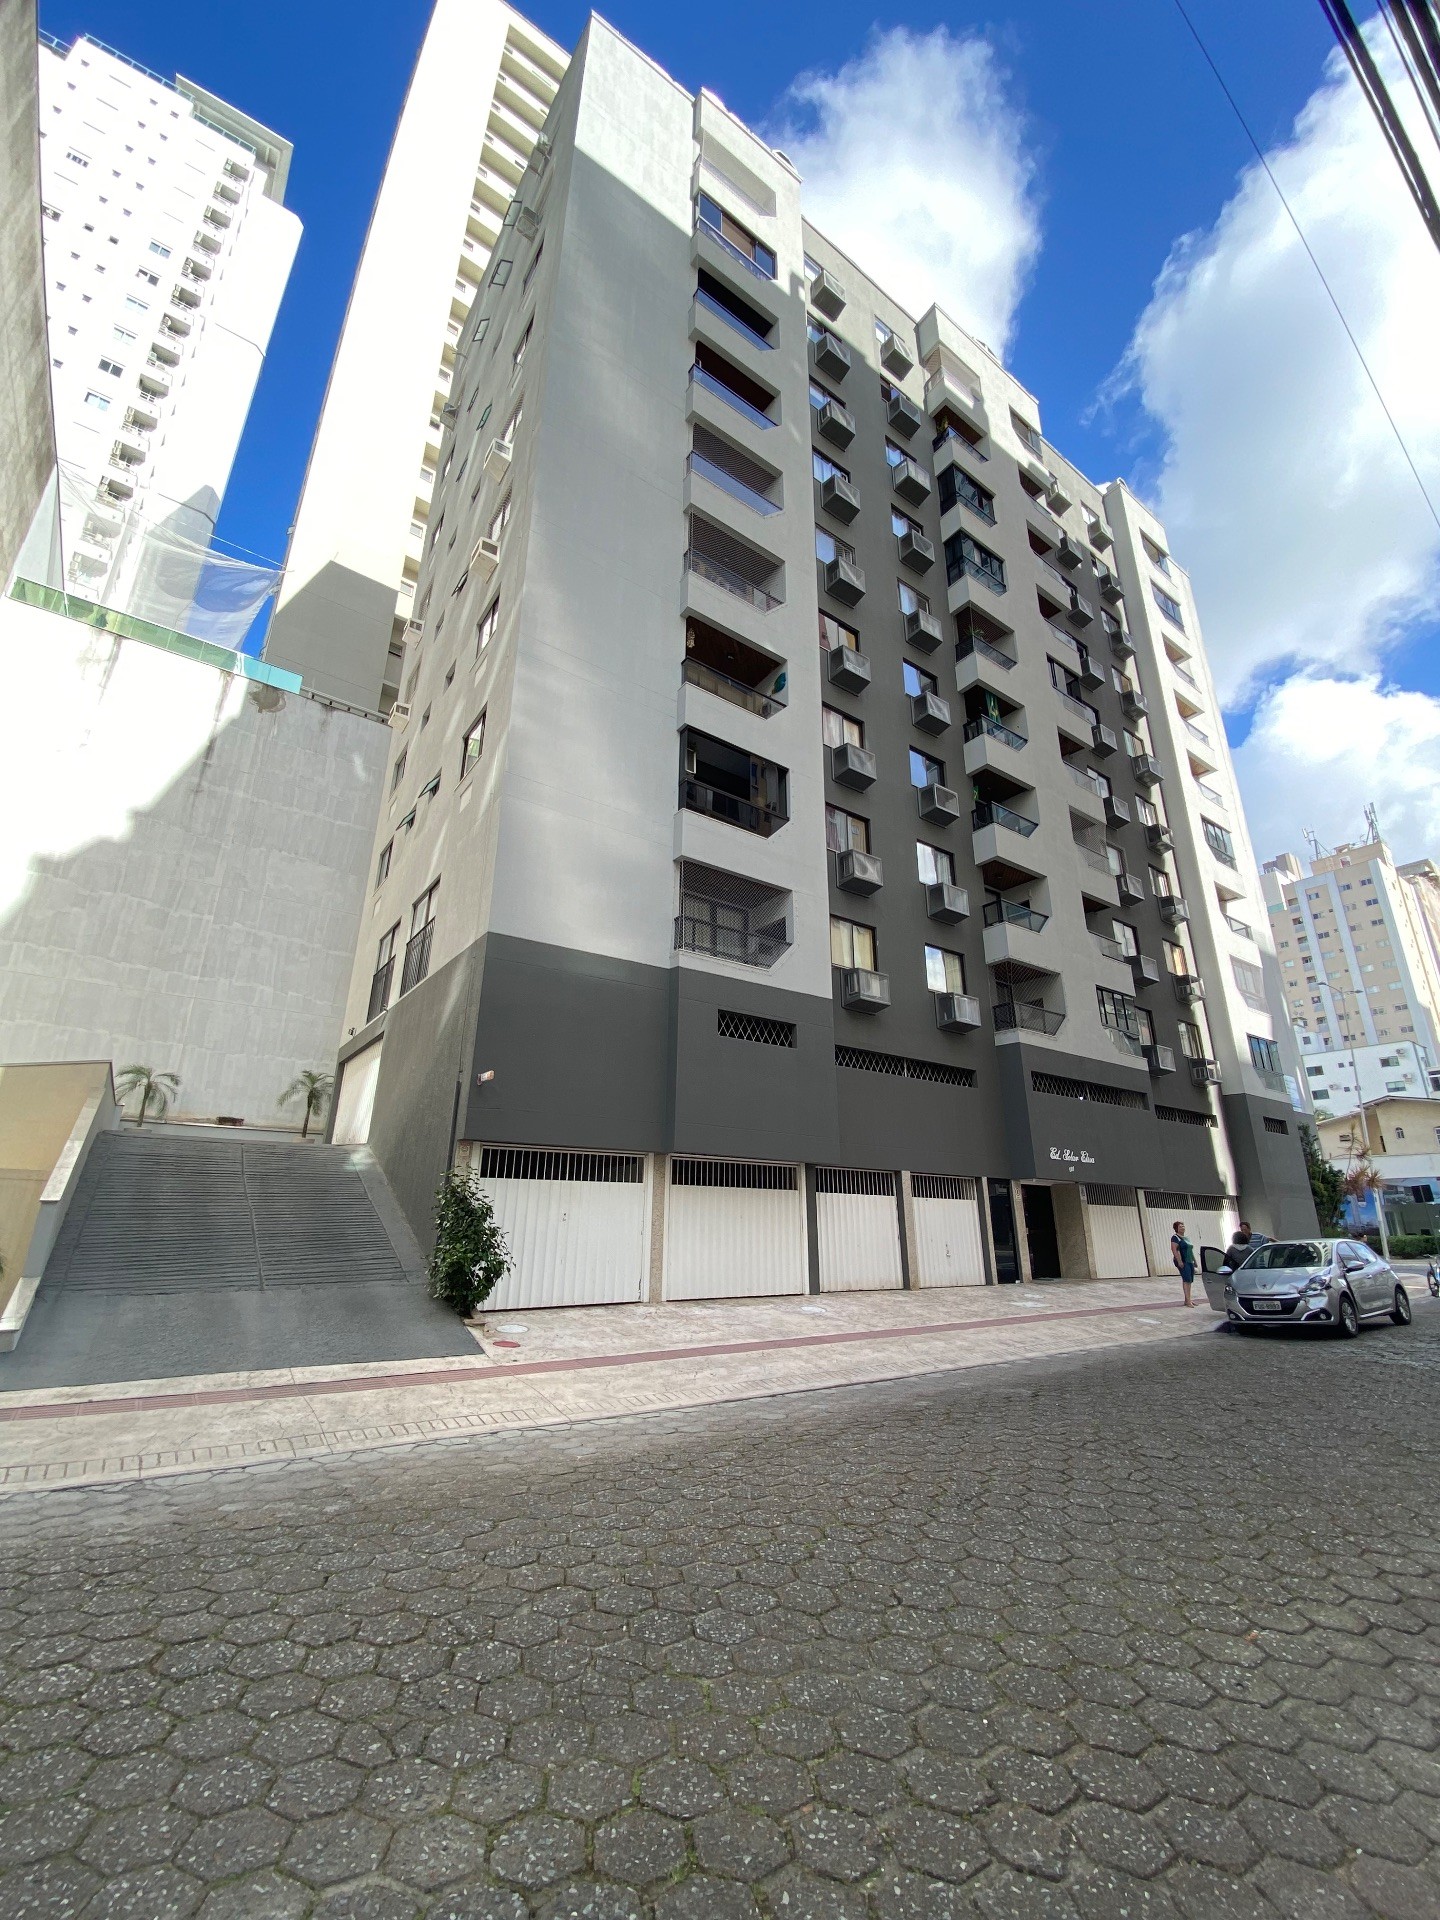 Apartamento Mobiliado Com 2 Dormitórios ao lado do Passeio San Miguel em Balneário Camboriú - SC.